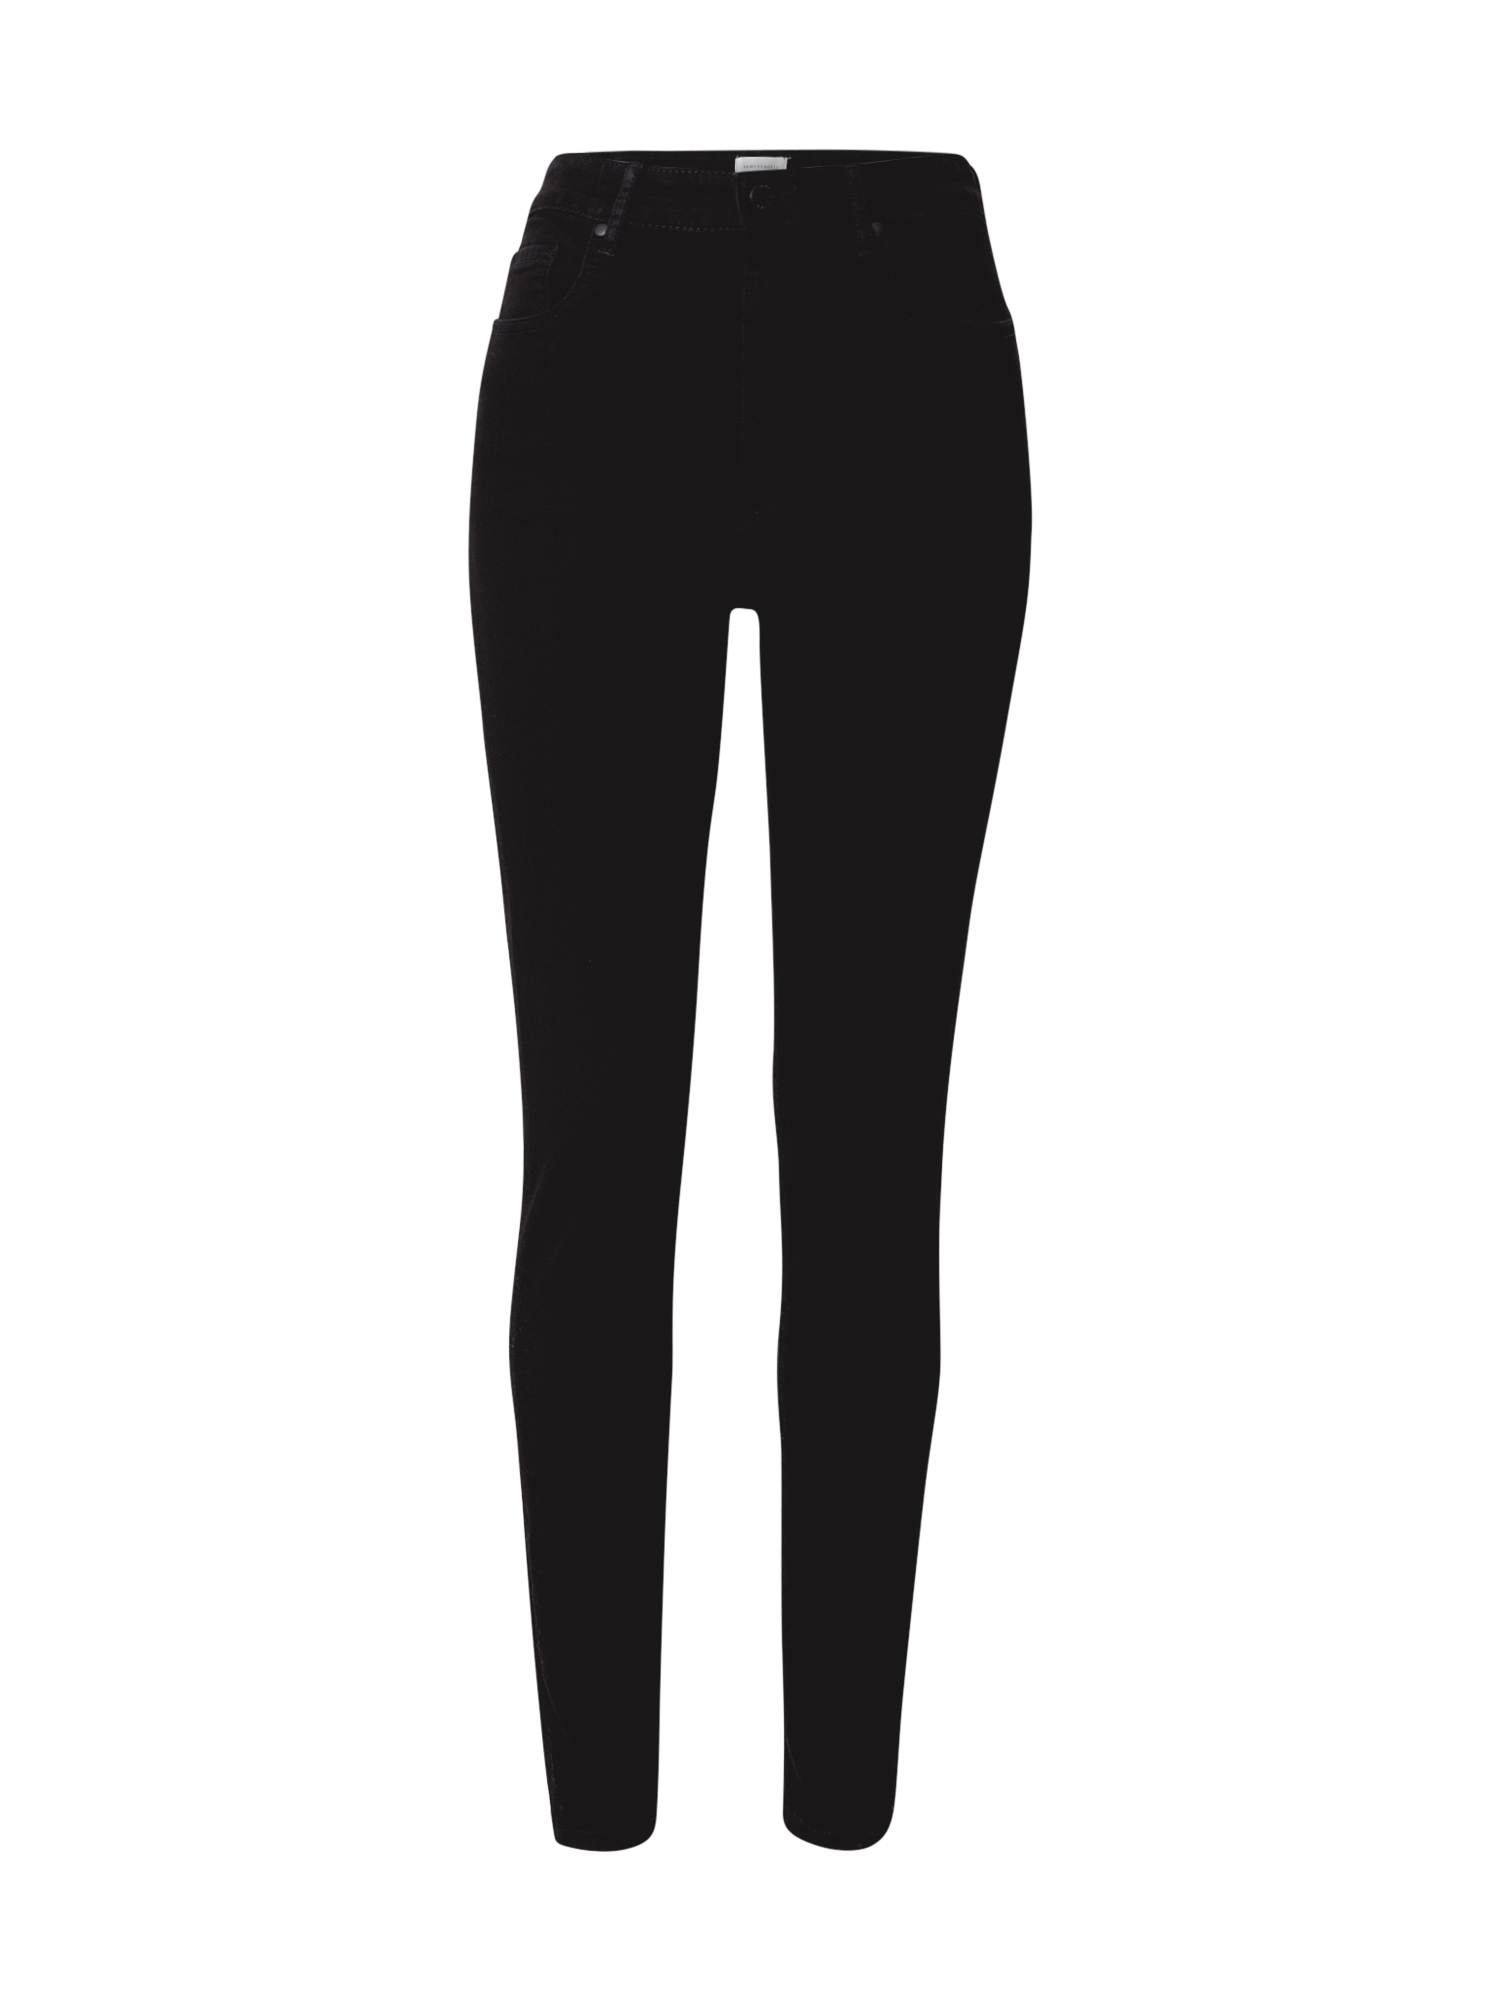 Odzież Kobiety ARMEDANGELS Jeansy Ingaa X w kolorze Czarnym 